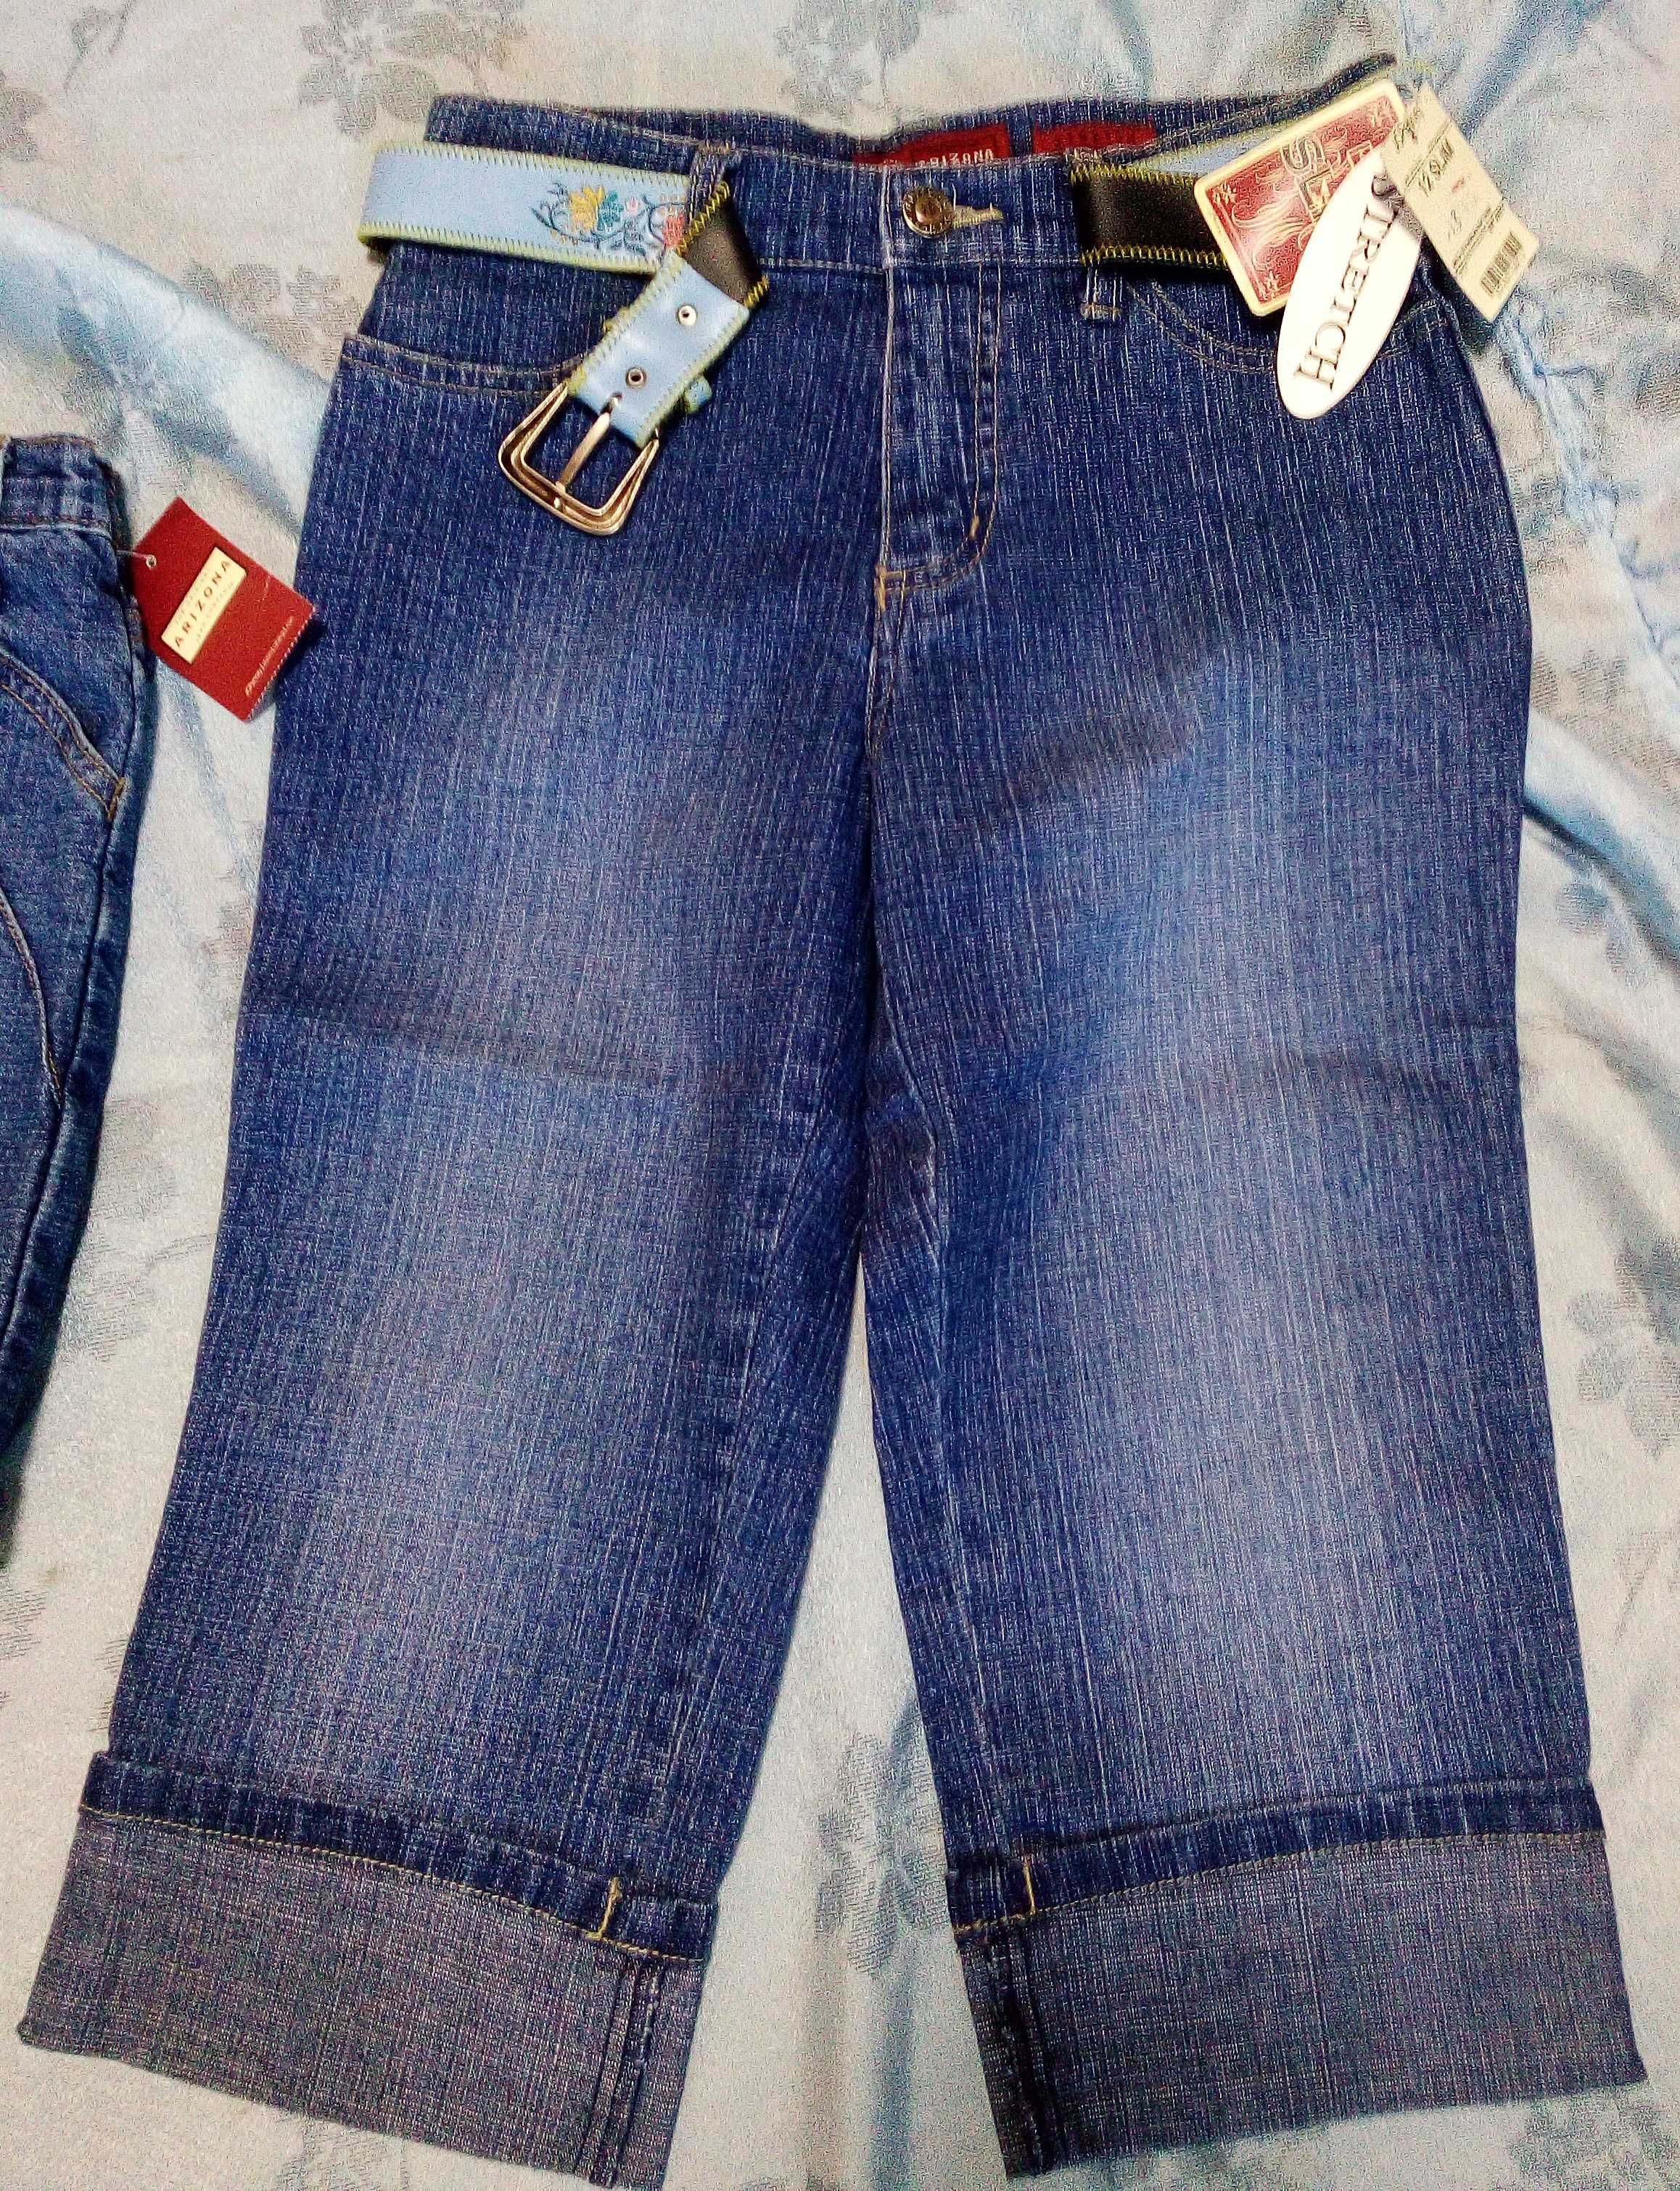 Новые джинсы капри для девочки 10-12 лет JCPenney(США)